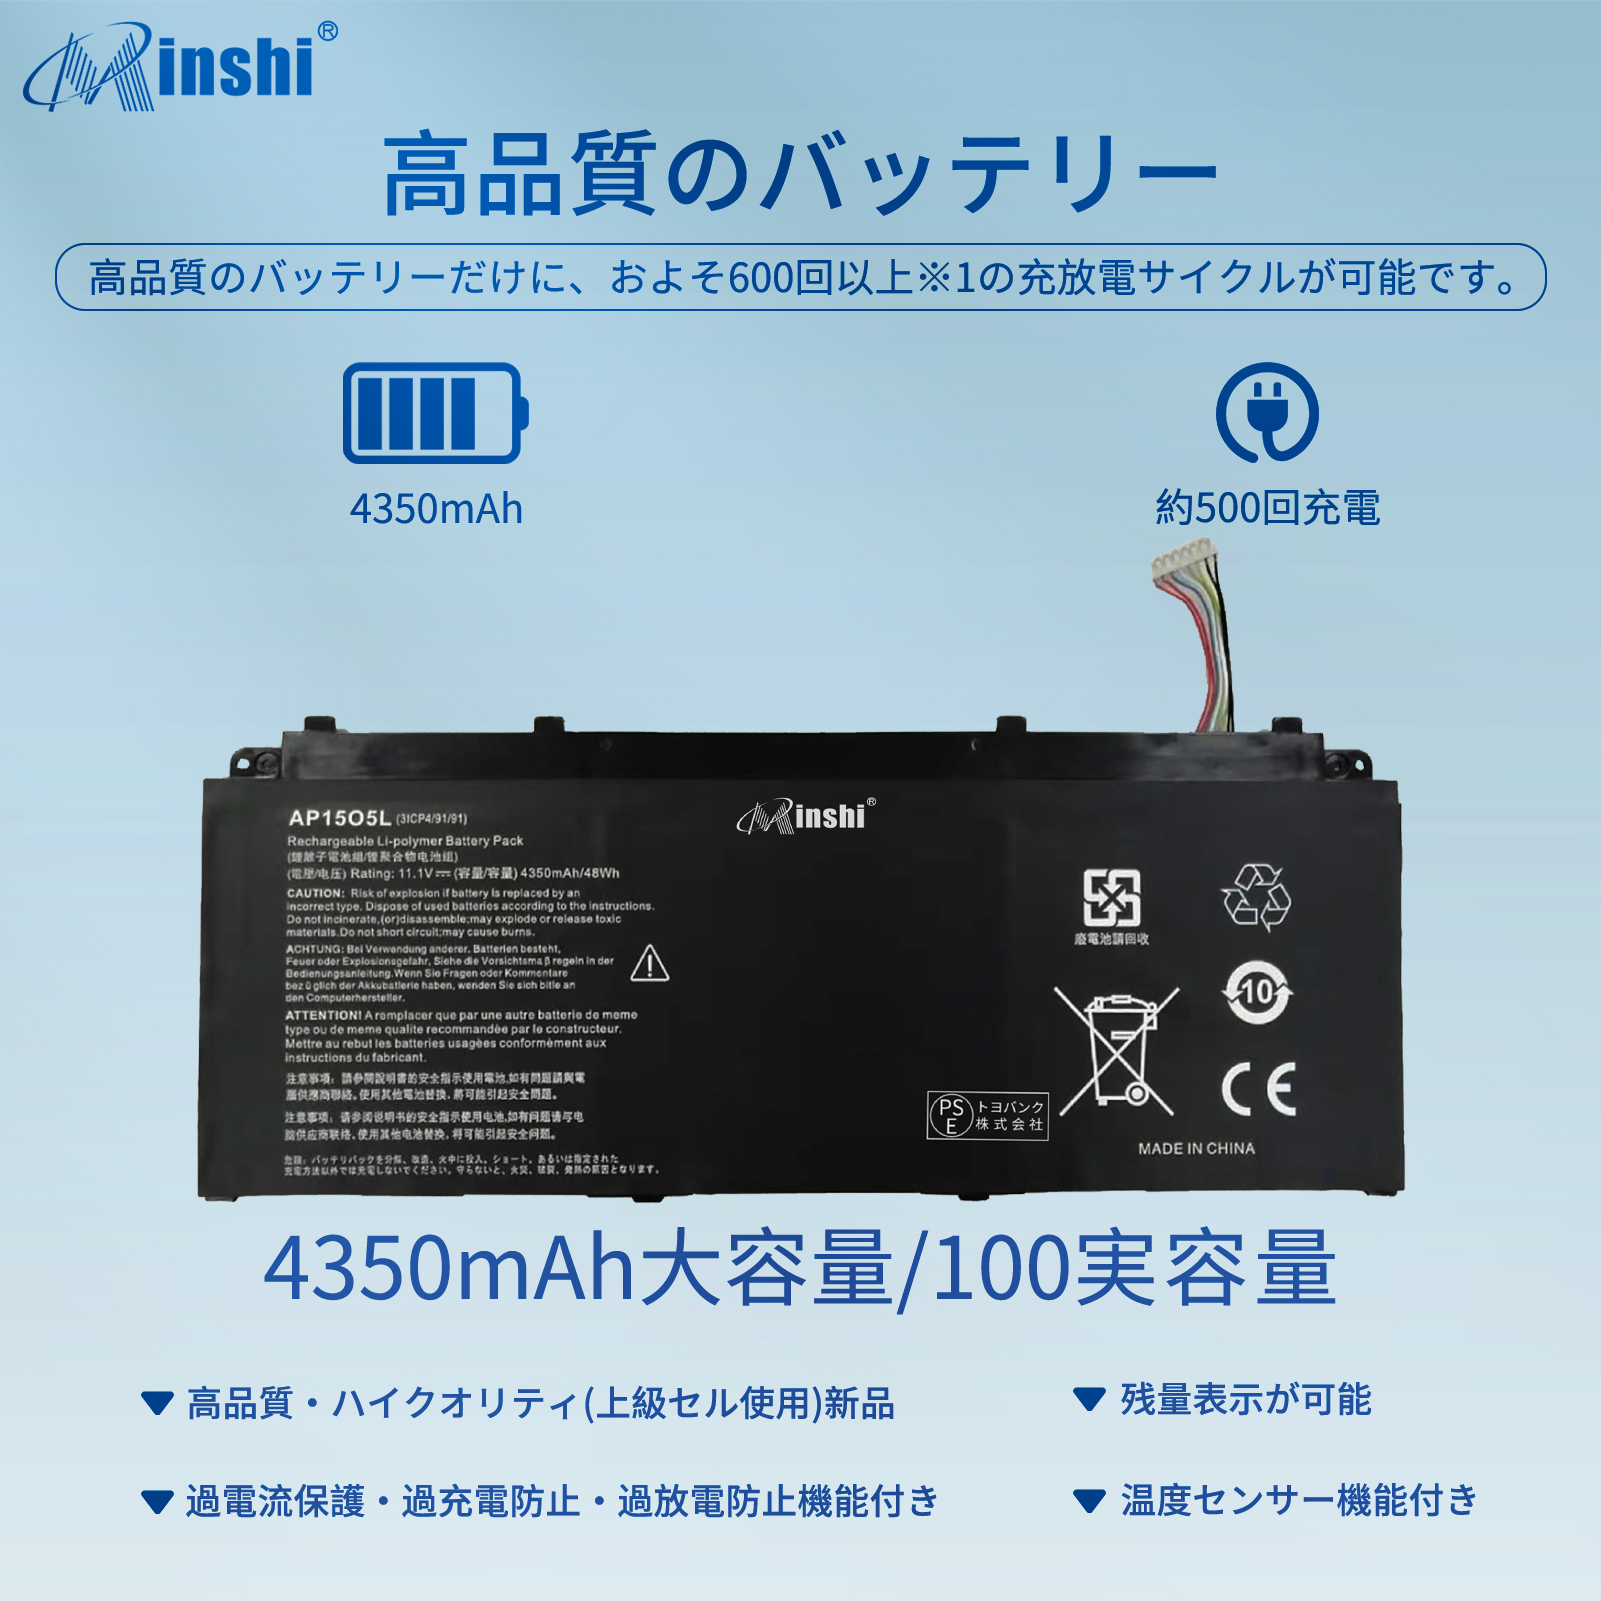  minshi ACER AP15O5L 対応 互換バッテリー 4350mAh PSE認定済 高品質交換用バッテリー